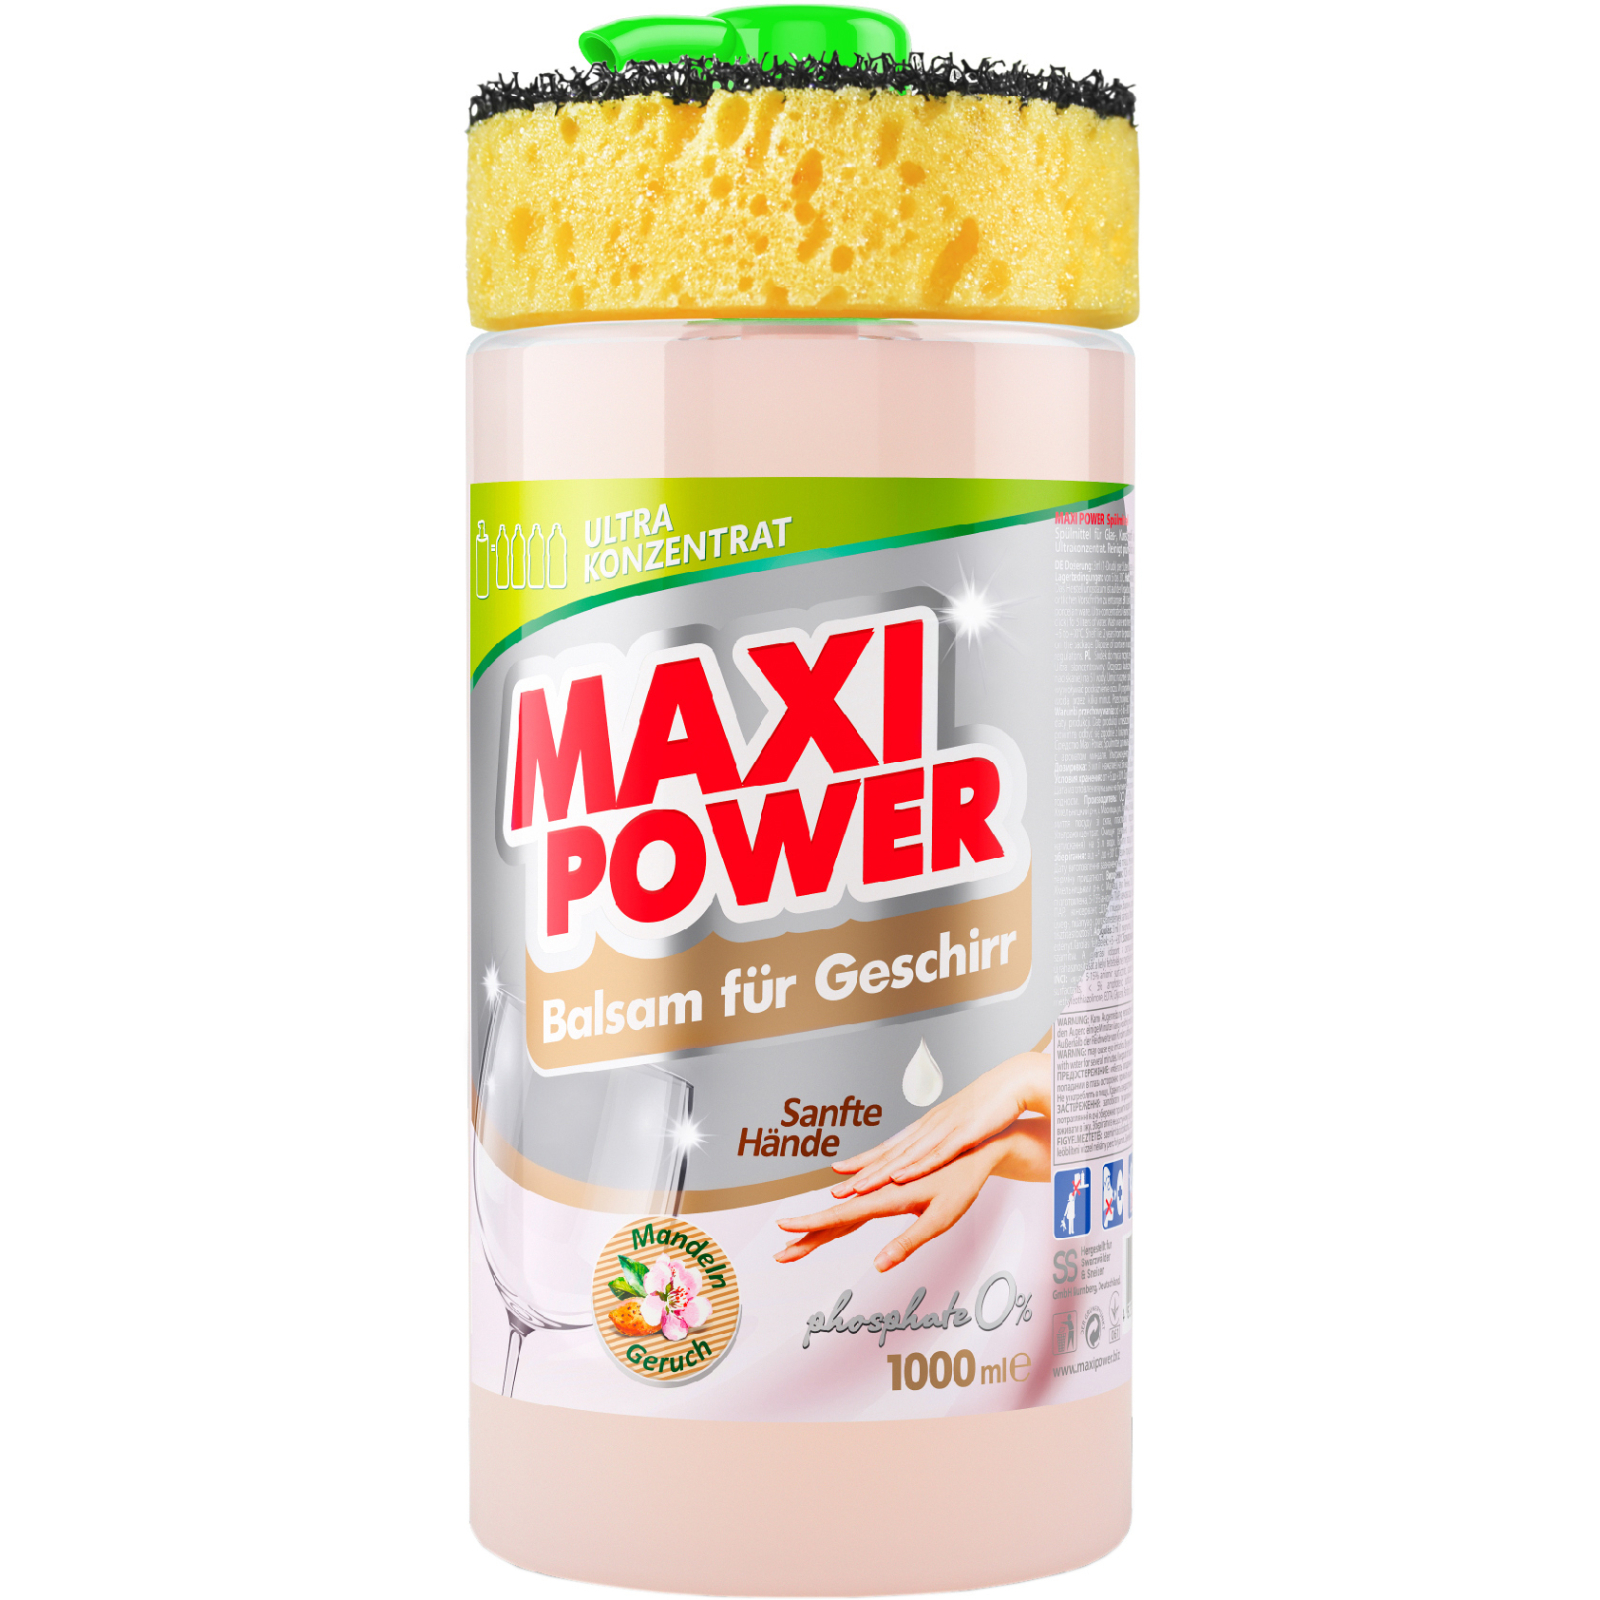 Средство для ручного мытья посуды Maxi Power Миндаль запаска 1000 мл (4823098412151)